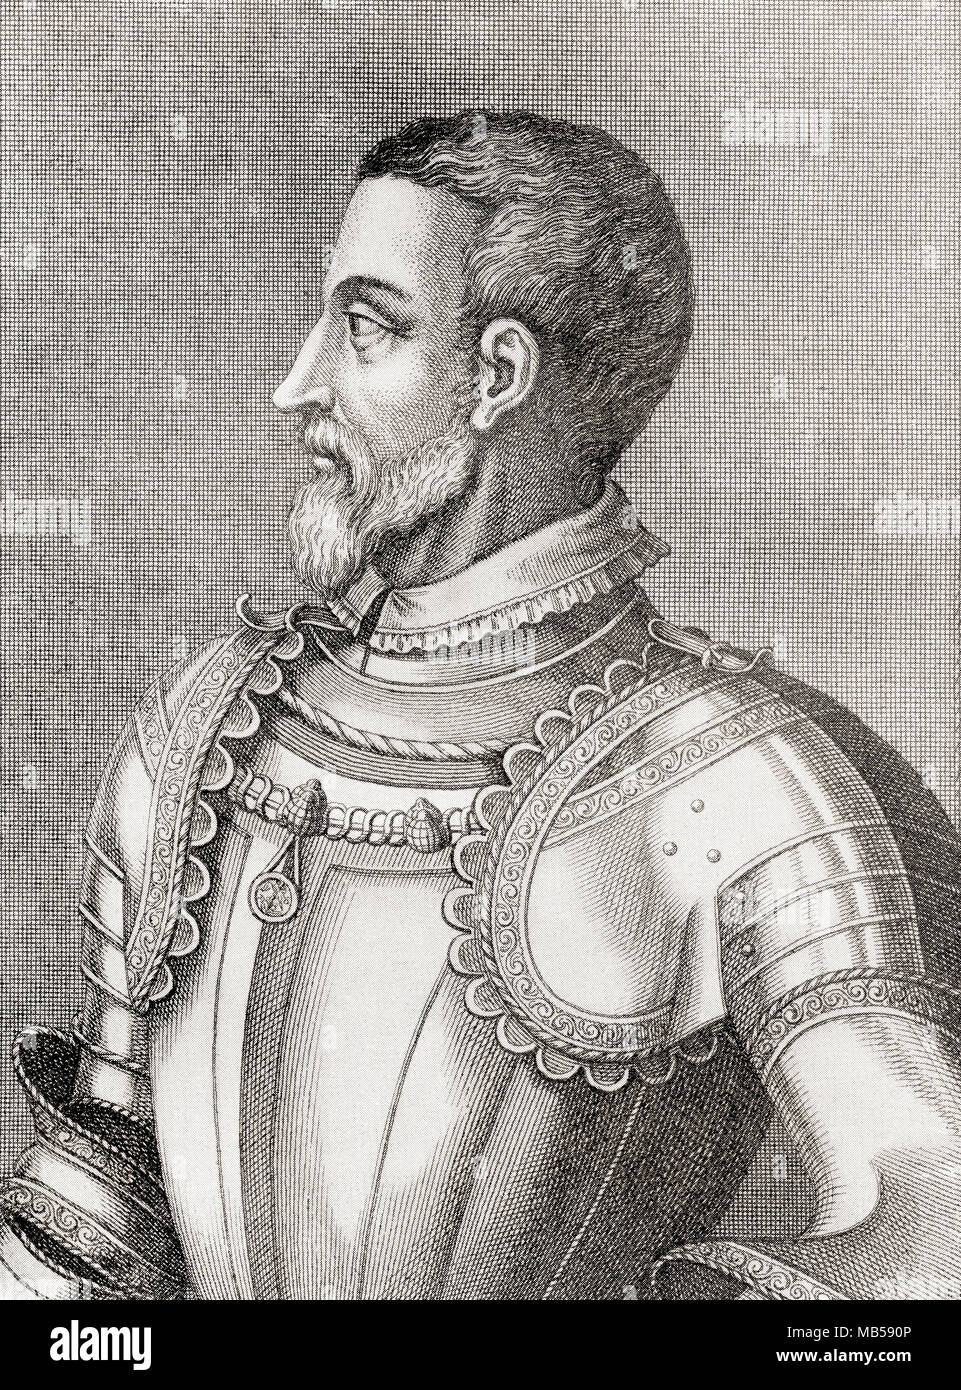 François de Lorraine II, Prince de Joinville, Duc de Guise, duc d'Aumale, 1519 - 1563. Soldat et homme politique français. À partir de la bibliothèque de documentation internationale célèbre, publié c. 1900 Banque D'Images